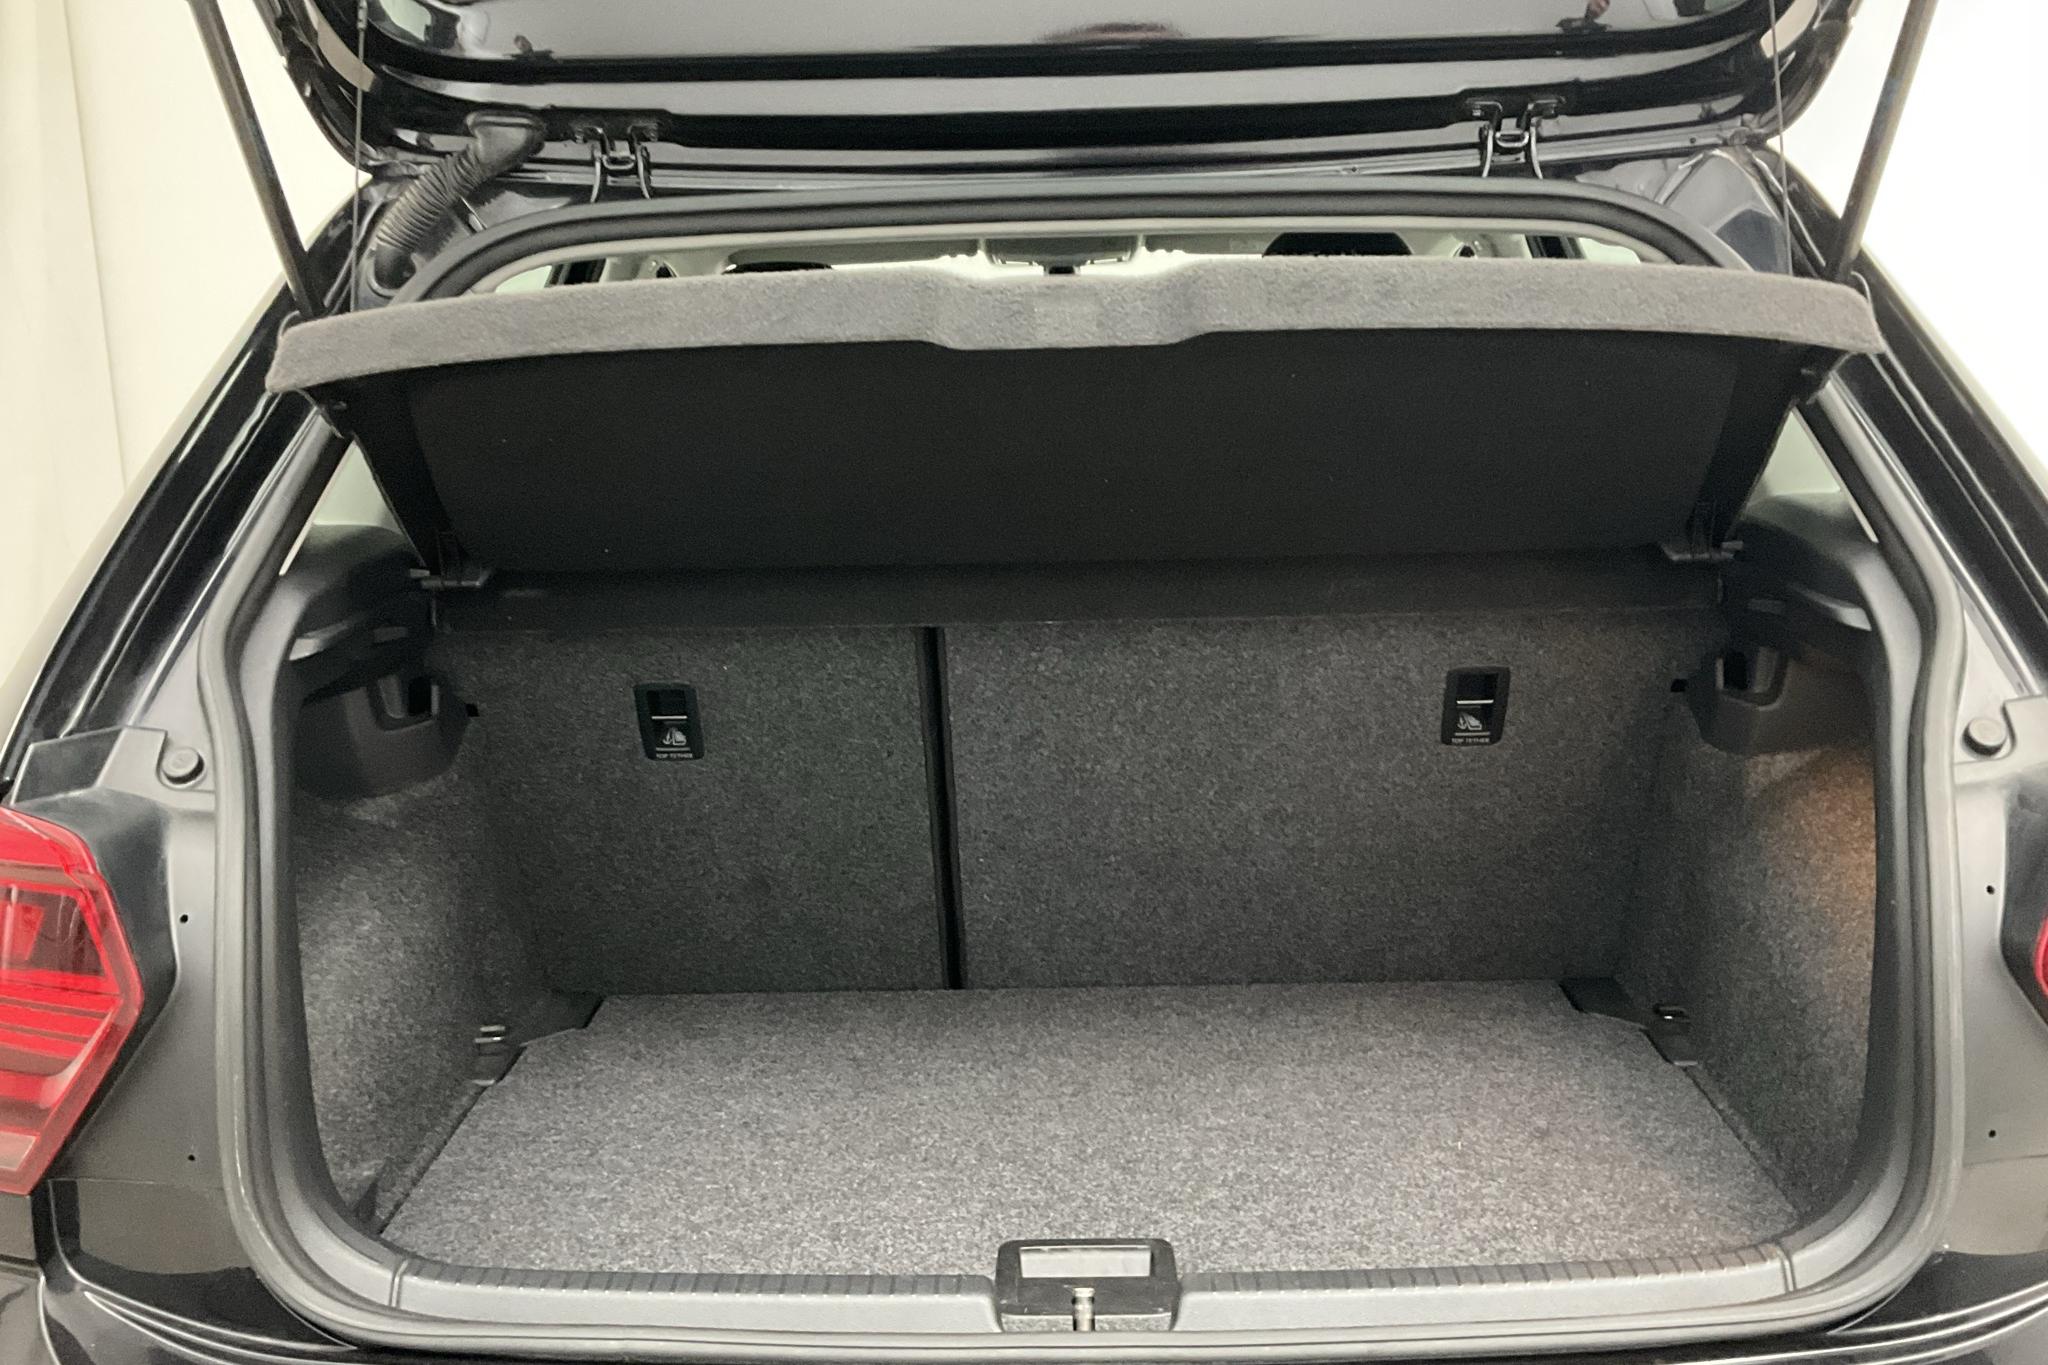 VW Polo 1.0 TSI 5dr (95hk) - 60 680 km - Manual - black - 2020